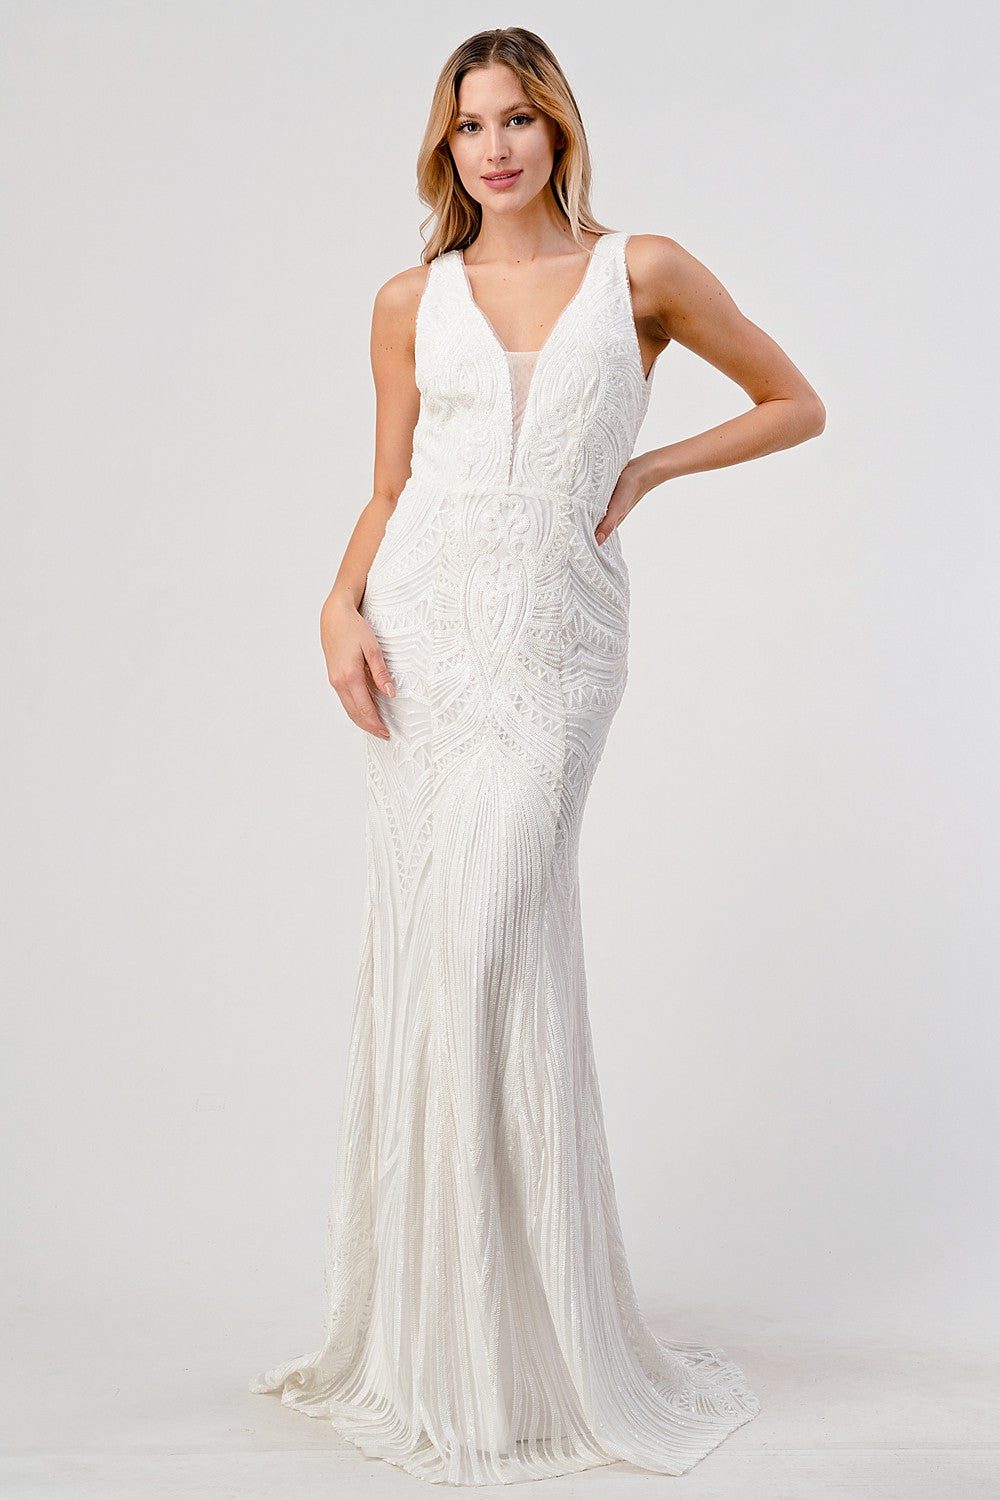 Adeline White Sequin V-Neck Sleeveless Wedding Dress